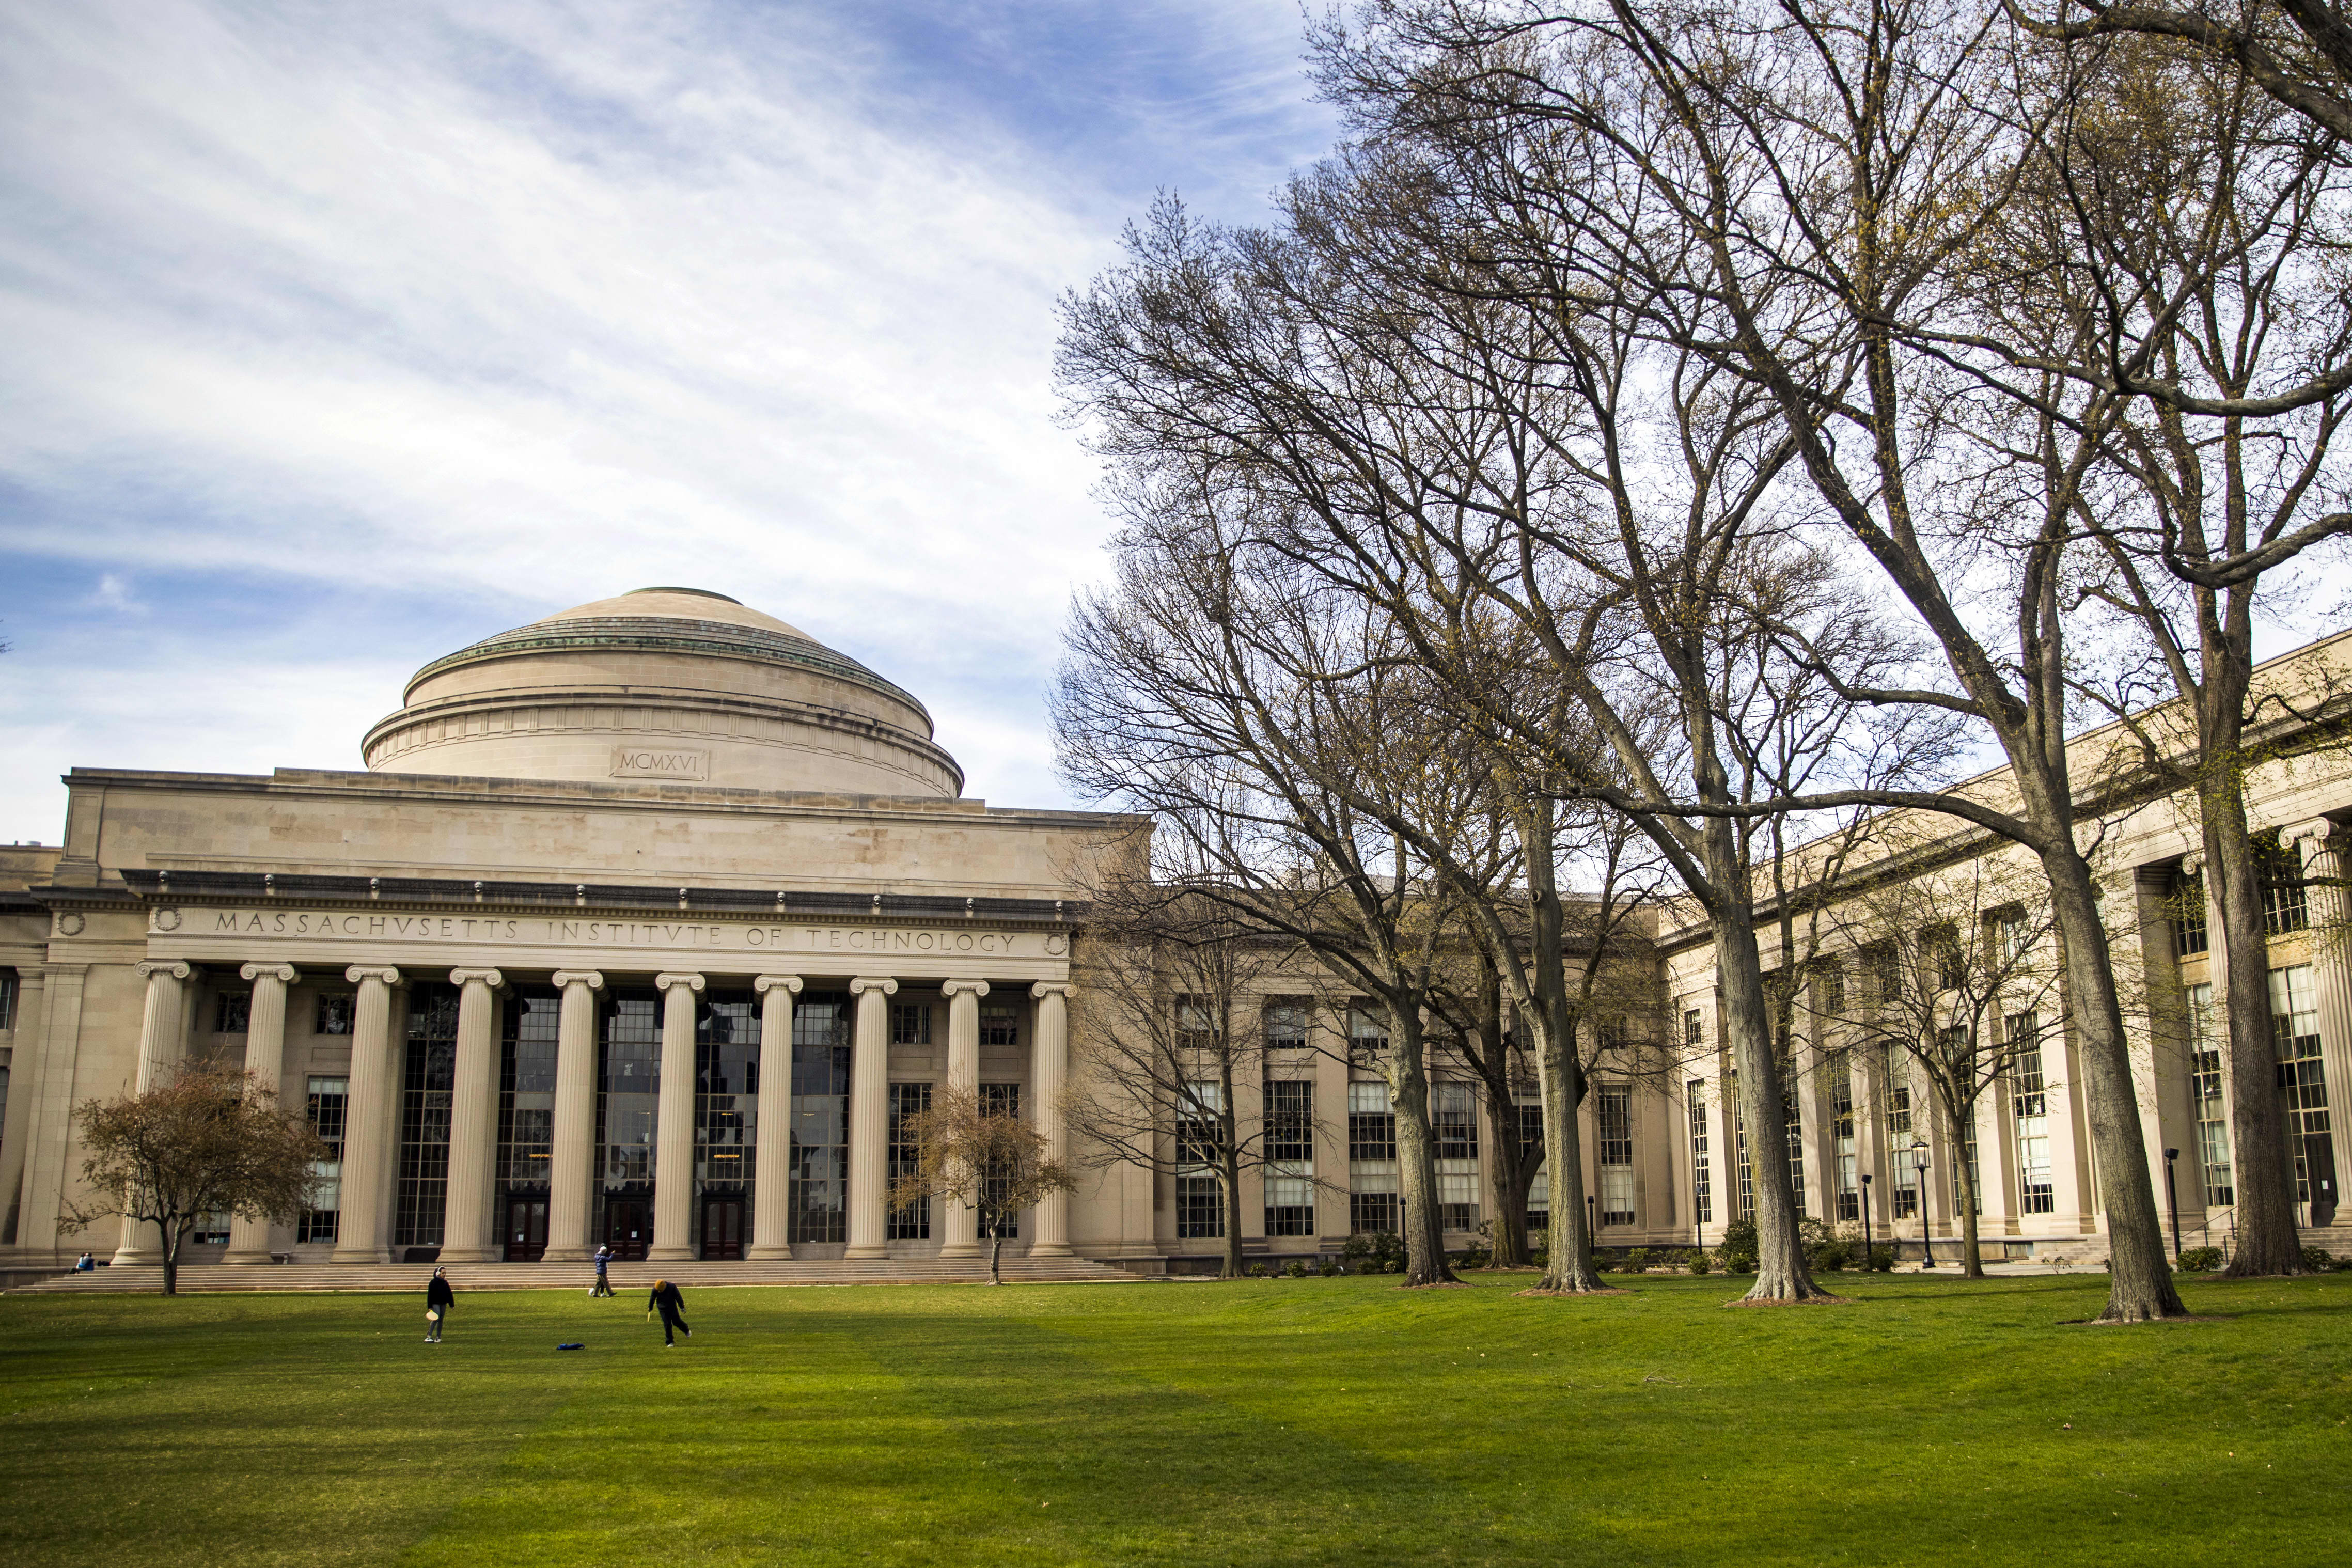 Massachusetts Institute of Technology (MIT) campus in Cambridge, Massachusetts